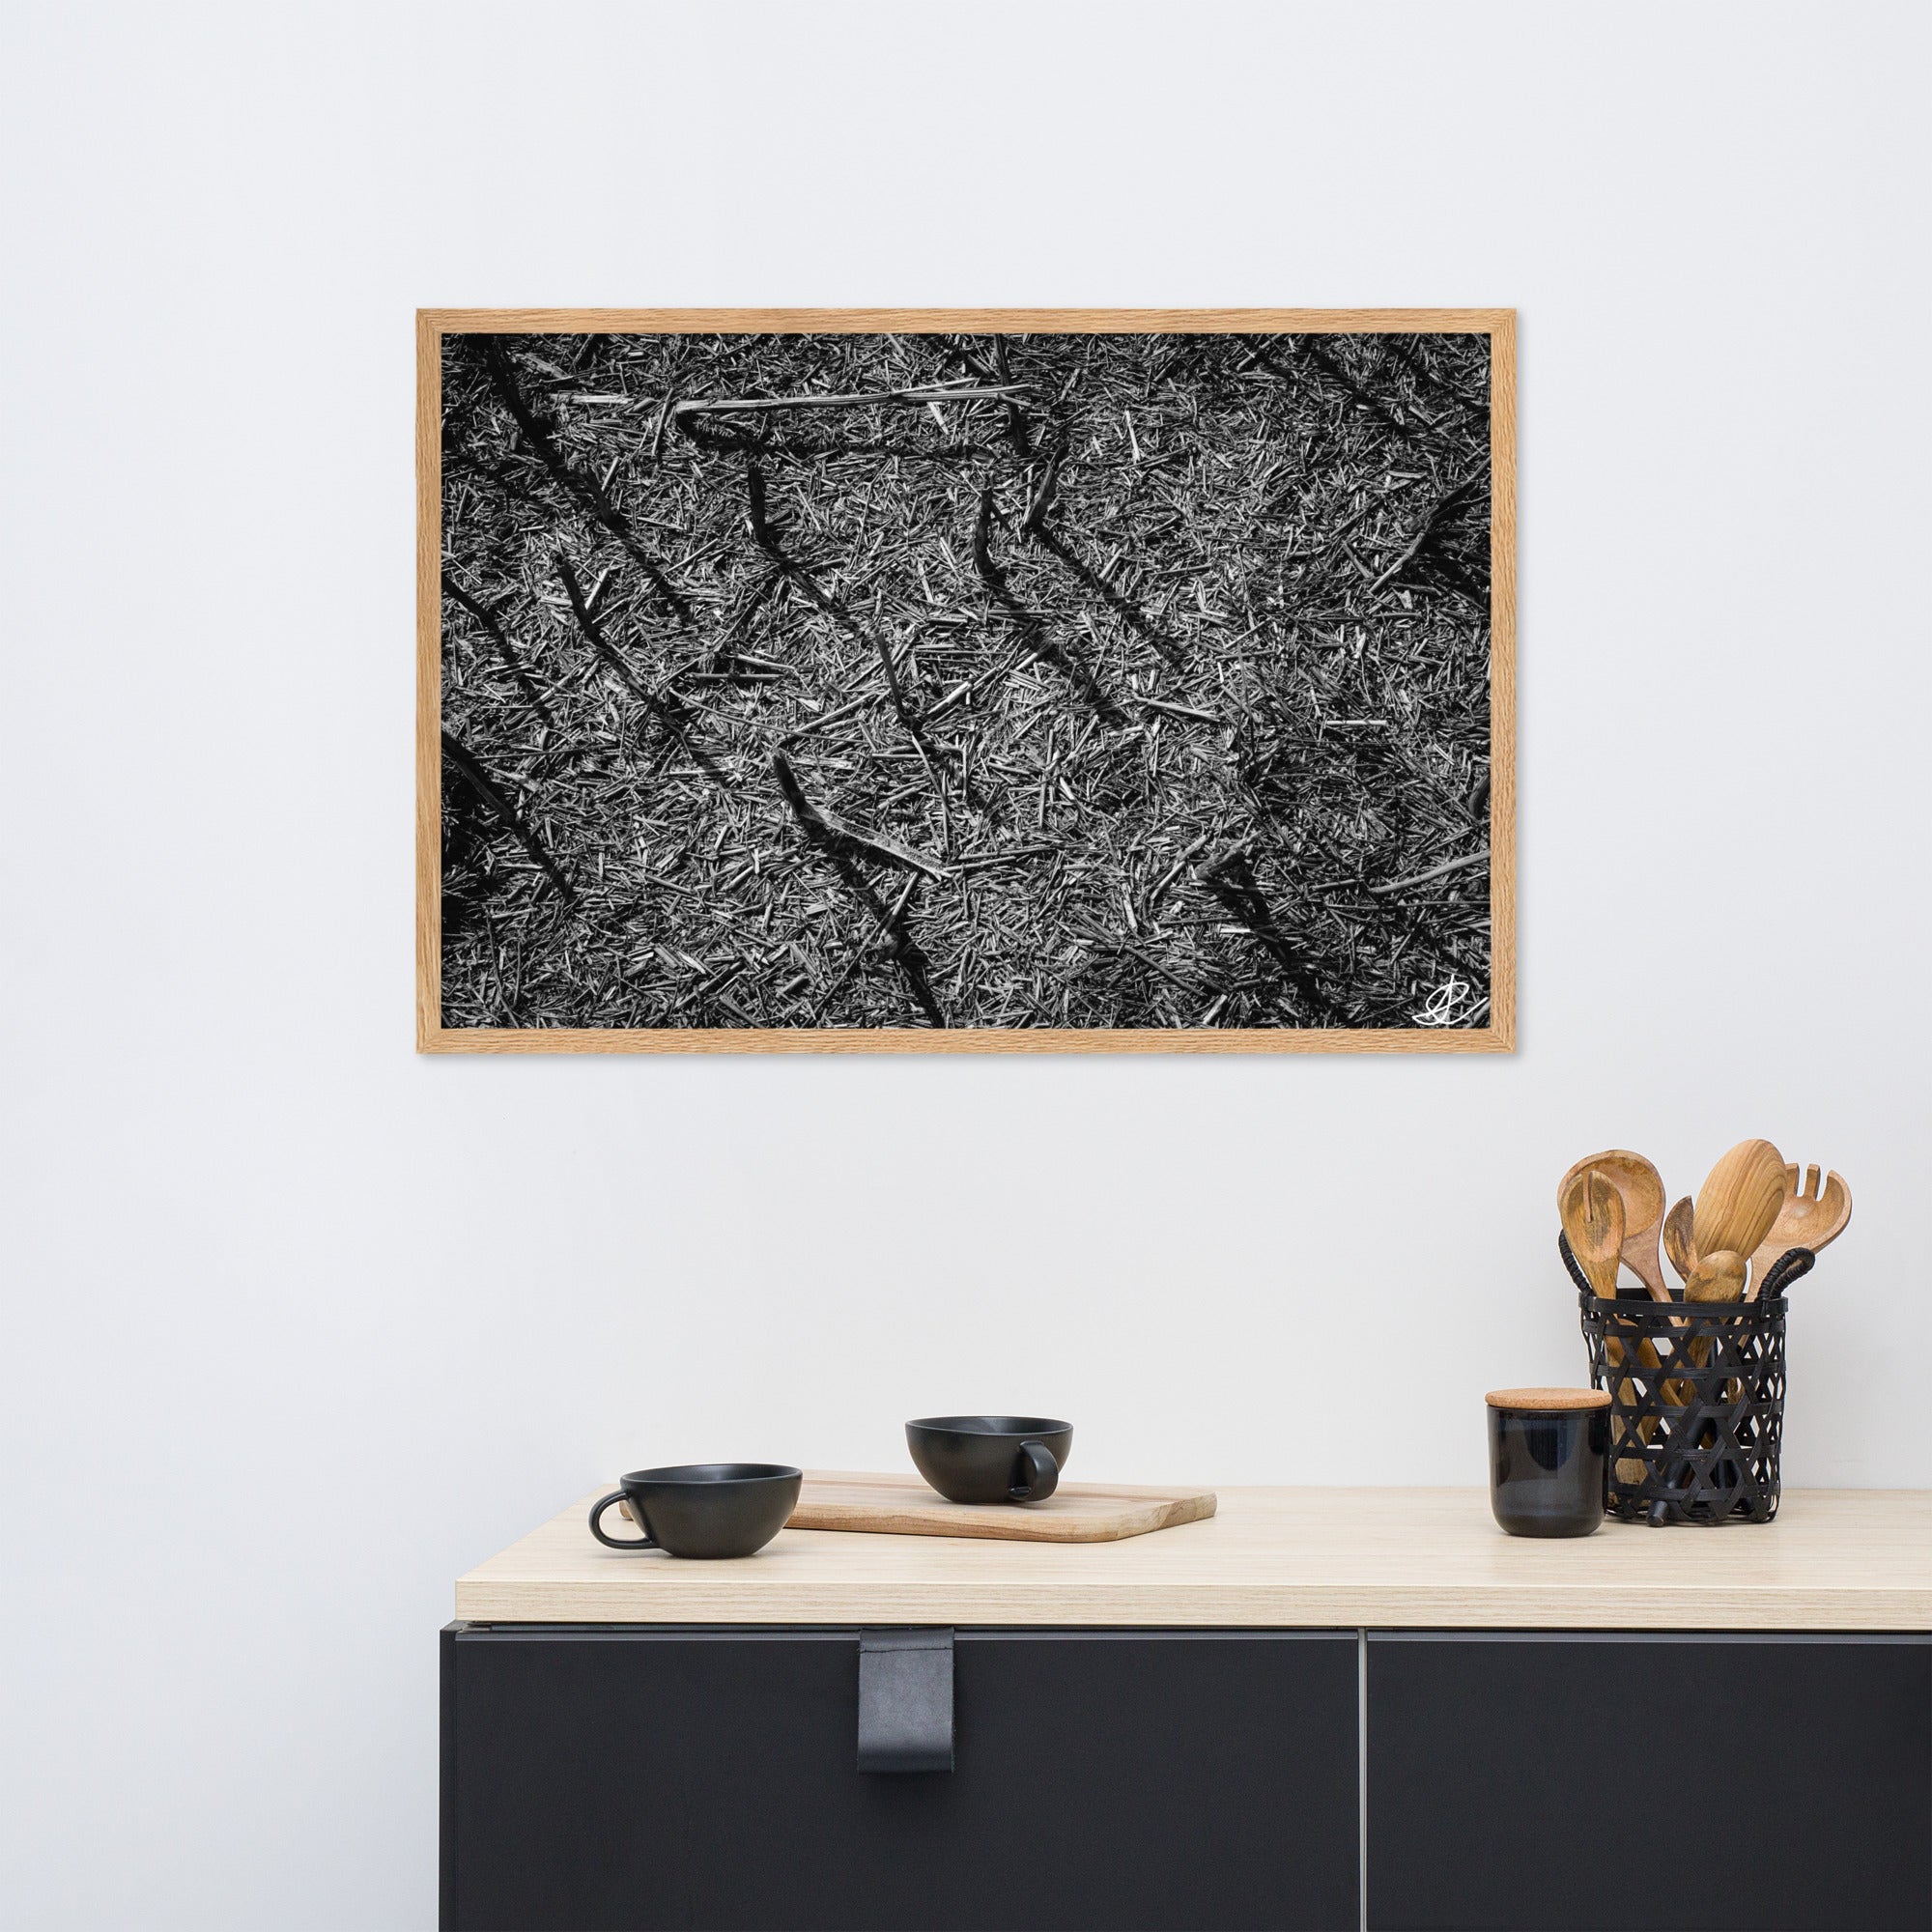 Photographie artistique 'Champ Brûlé' par Ilan Shoham, illustrant un champ noir récemment ravagé par le feu, une image évoquant à la fois la perte et la beauté tranquille de la régénération naturelle, en grand format noir et blanc.